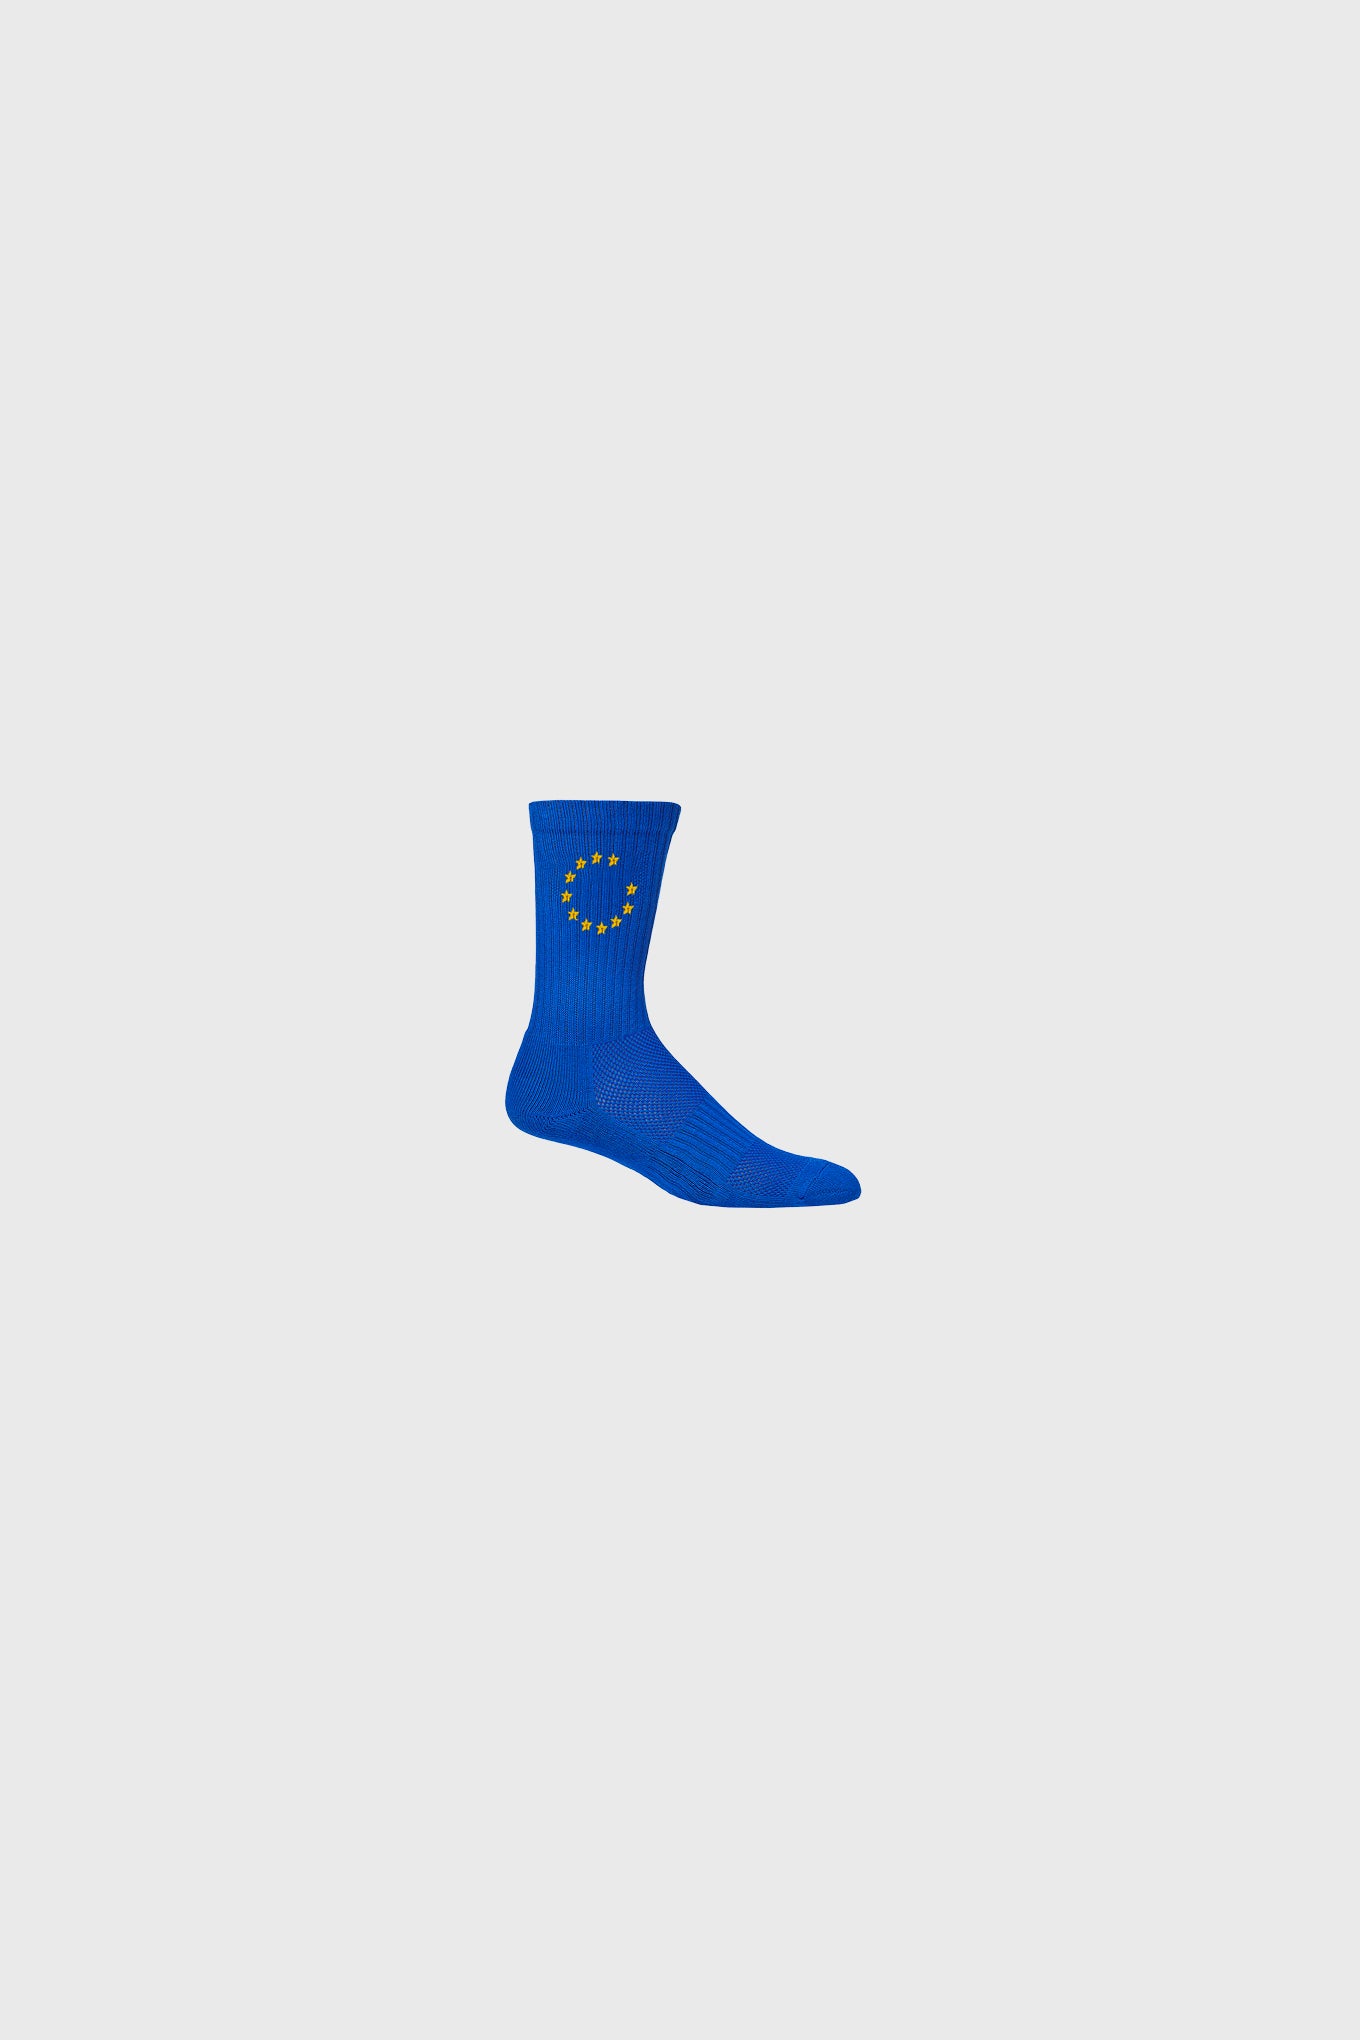 Eunify Socks Blue